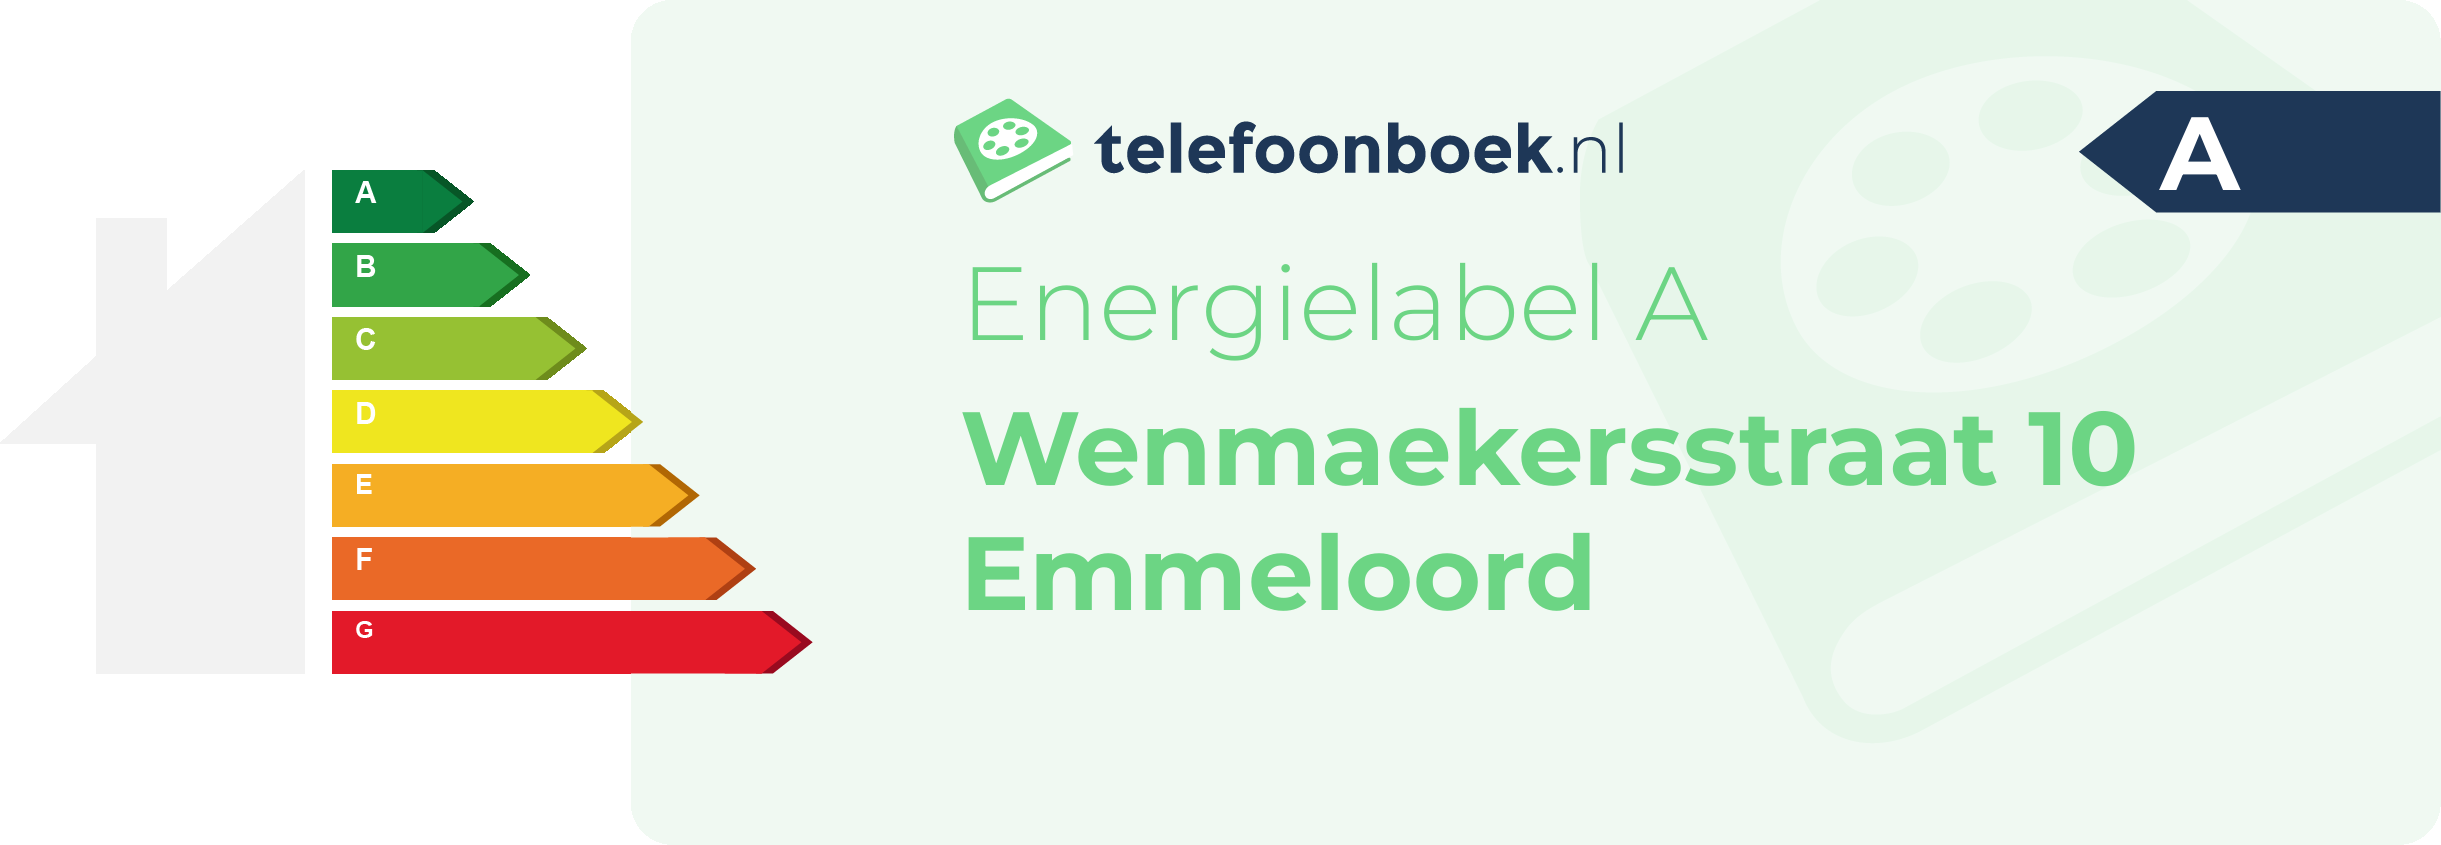 Energielabel Wenmaekersstraat 10 Emmeloord